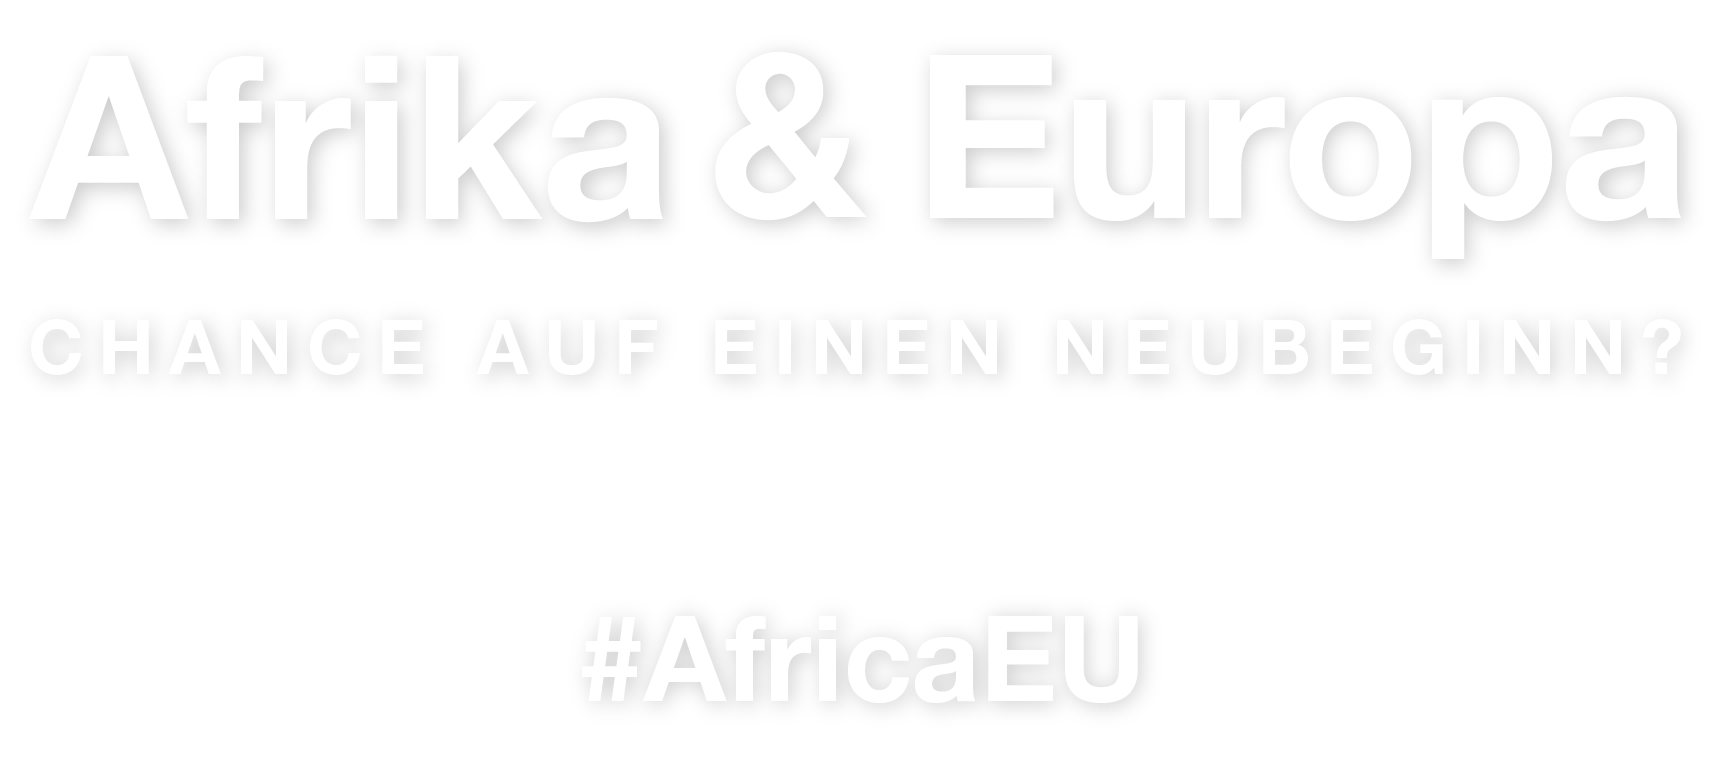 Afrika und Europa